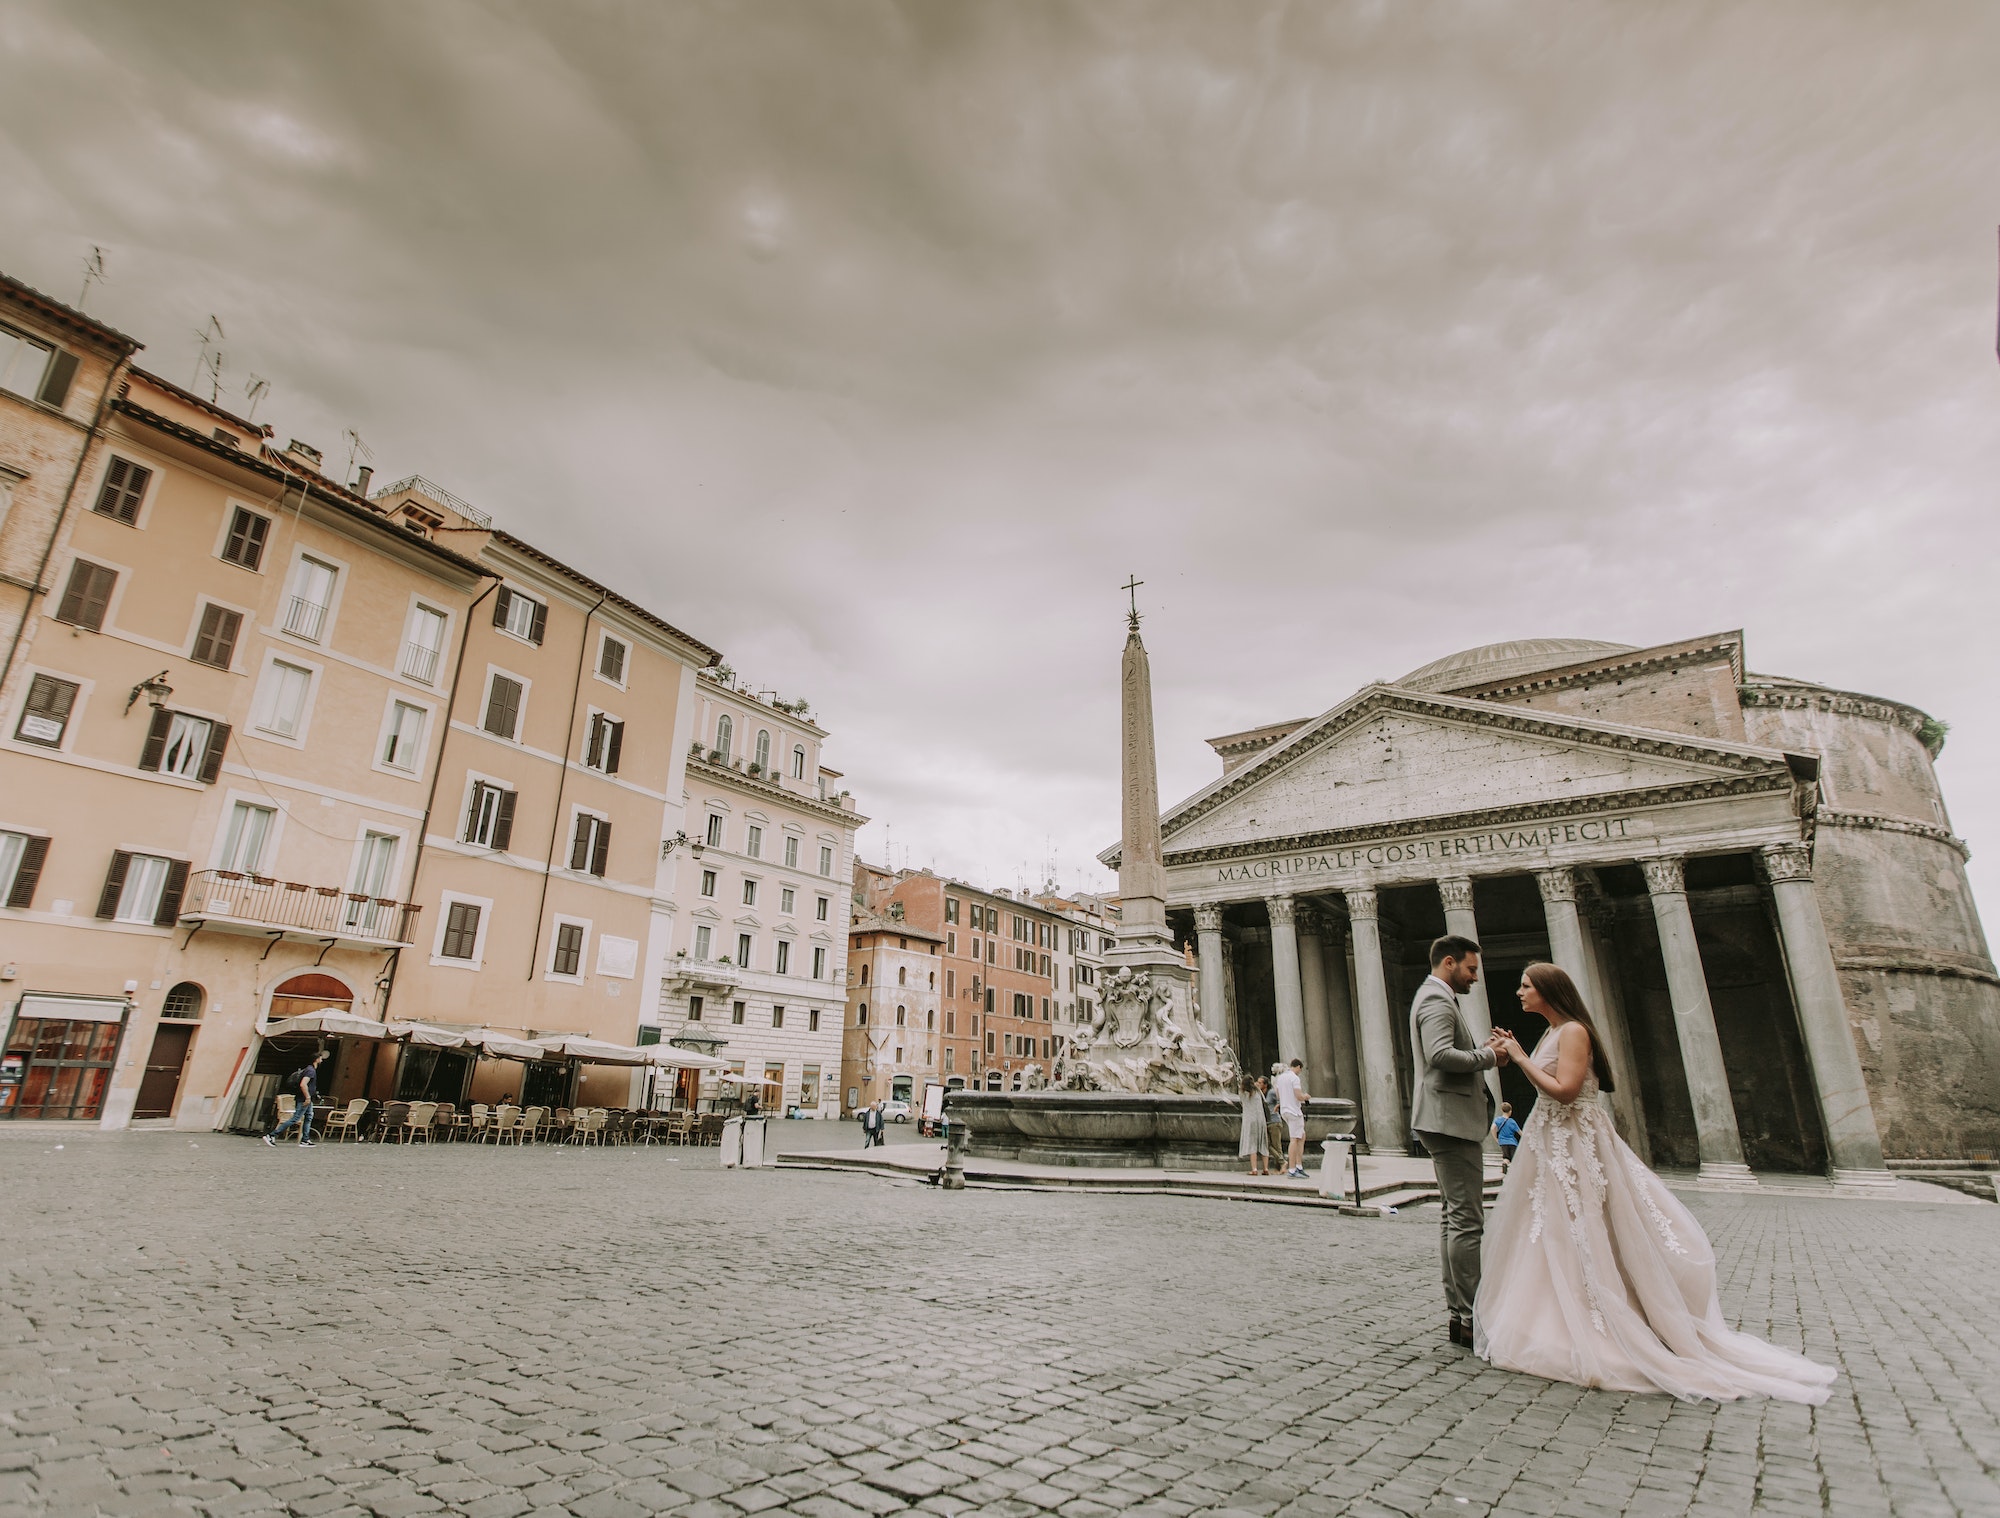 Koppel dat gaat trouwen in het buitenland voor het pantheon in Rome.